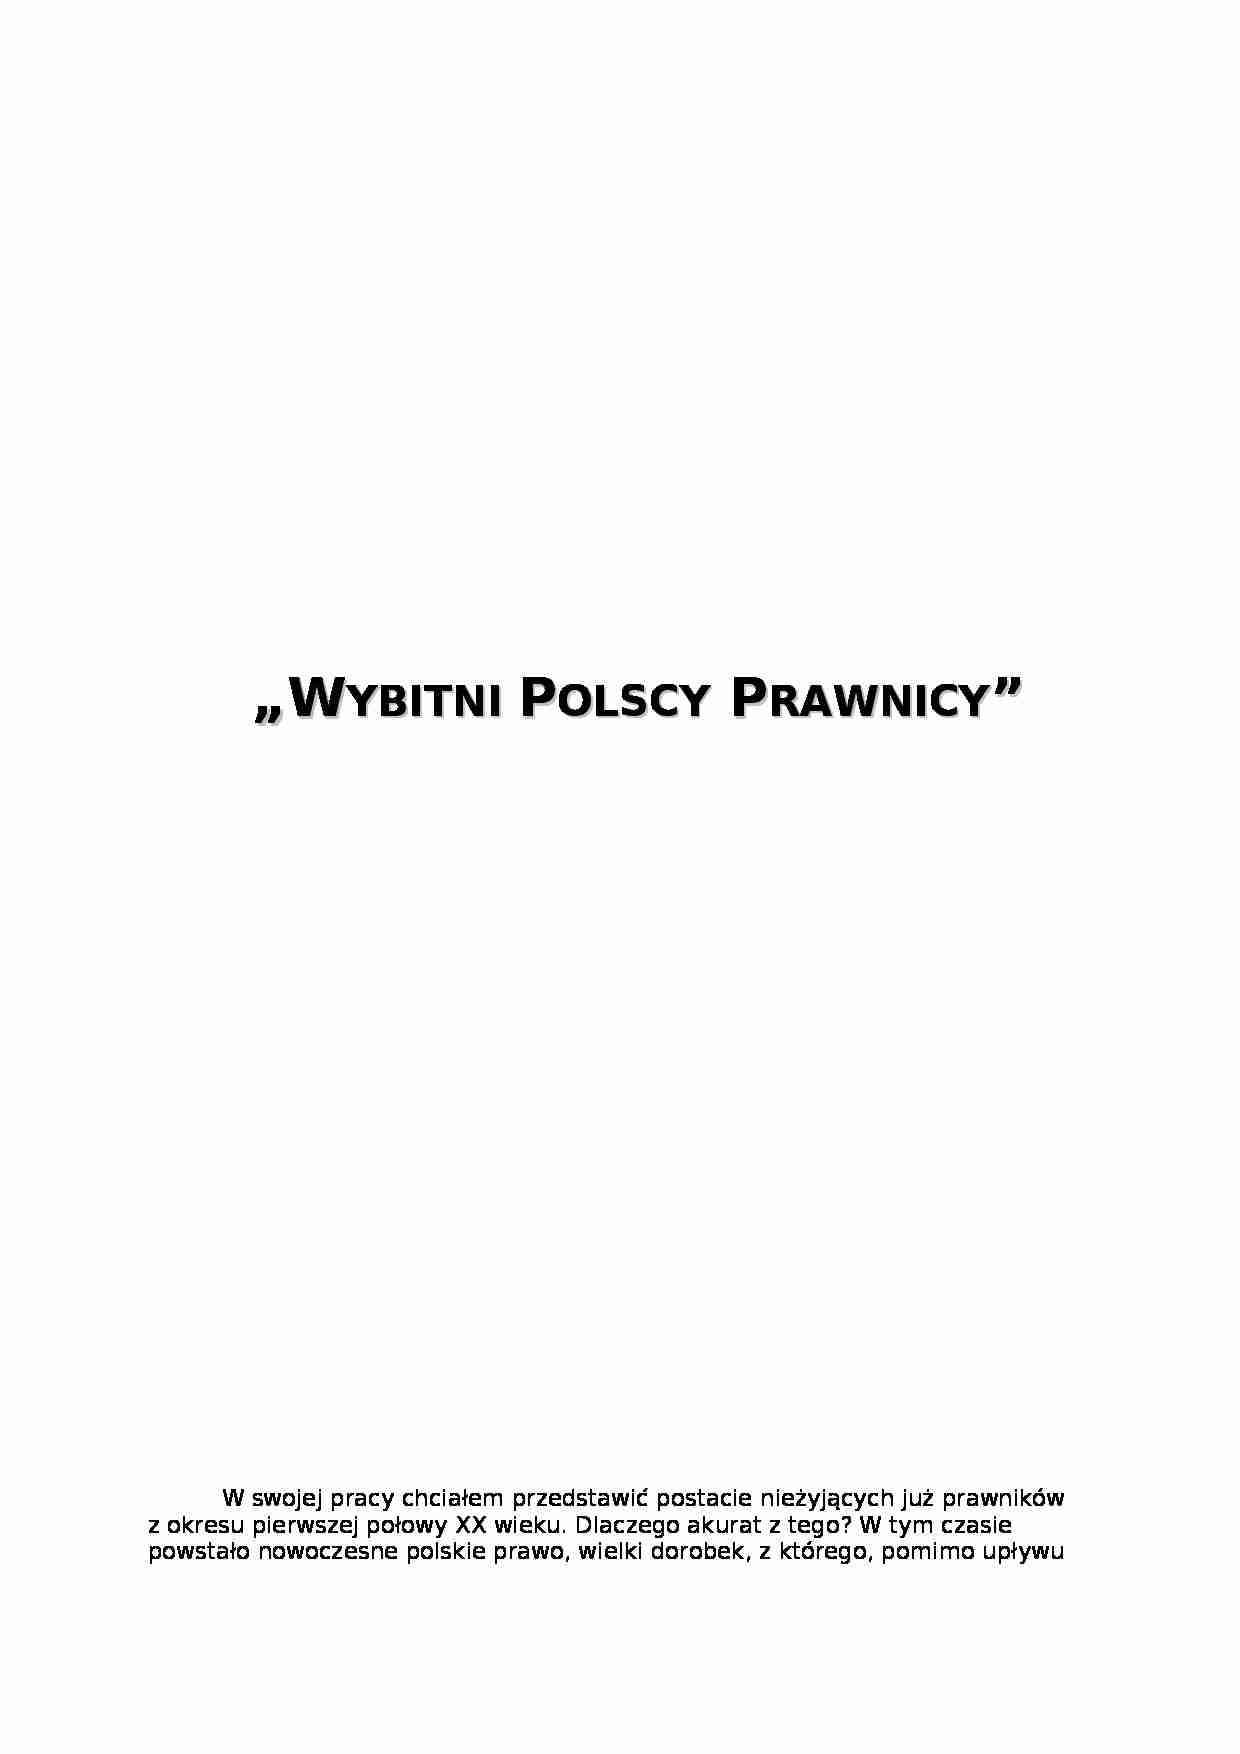 Wybitni Polscy Prawnicy- praca semestralna z prawa - strona 1